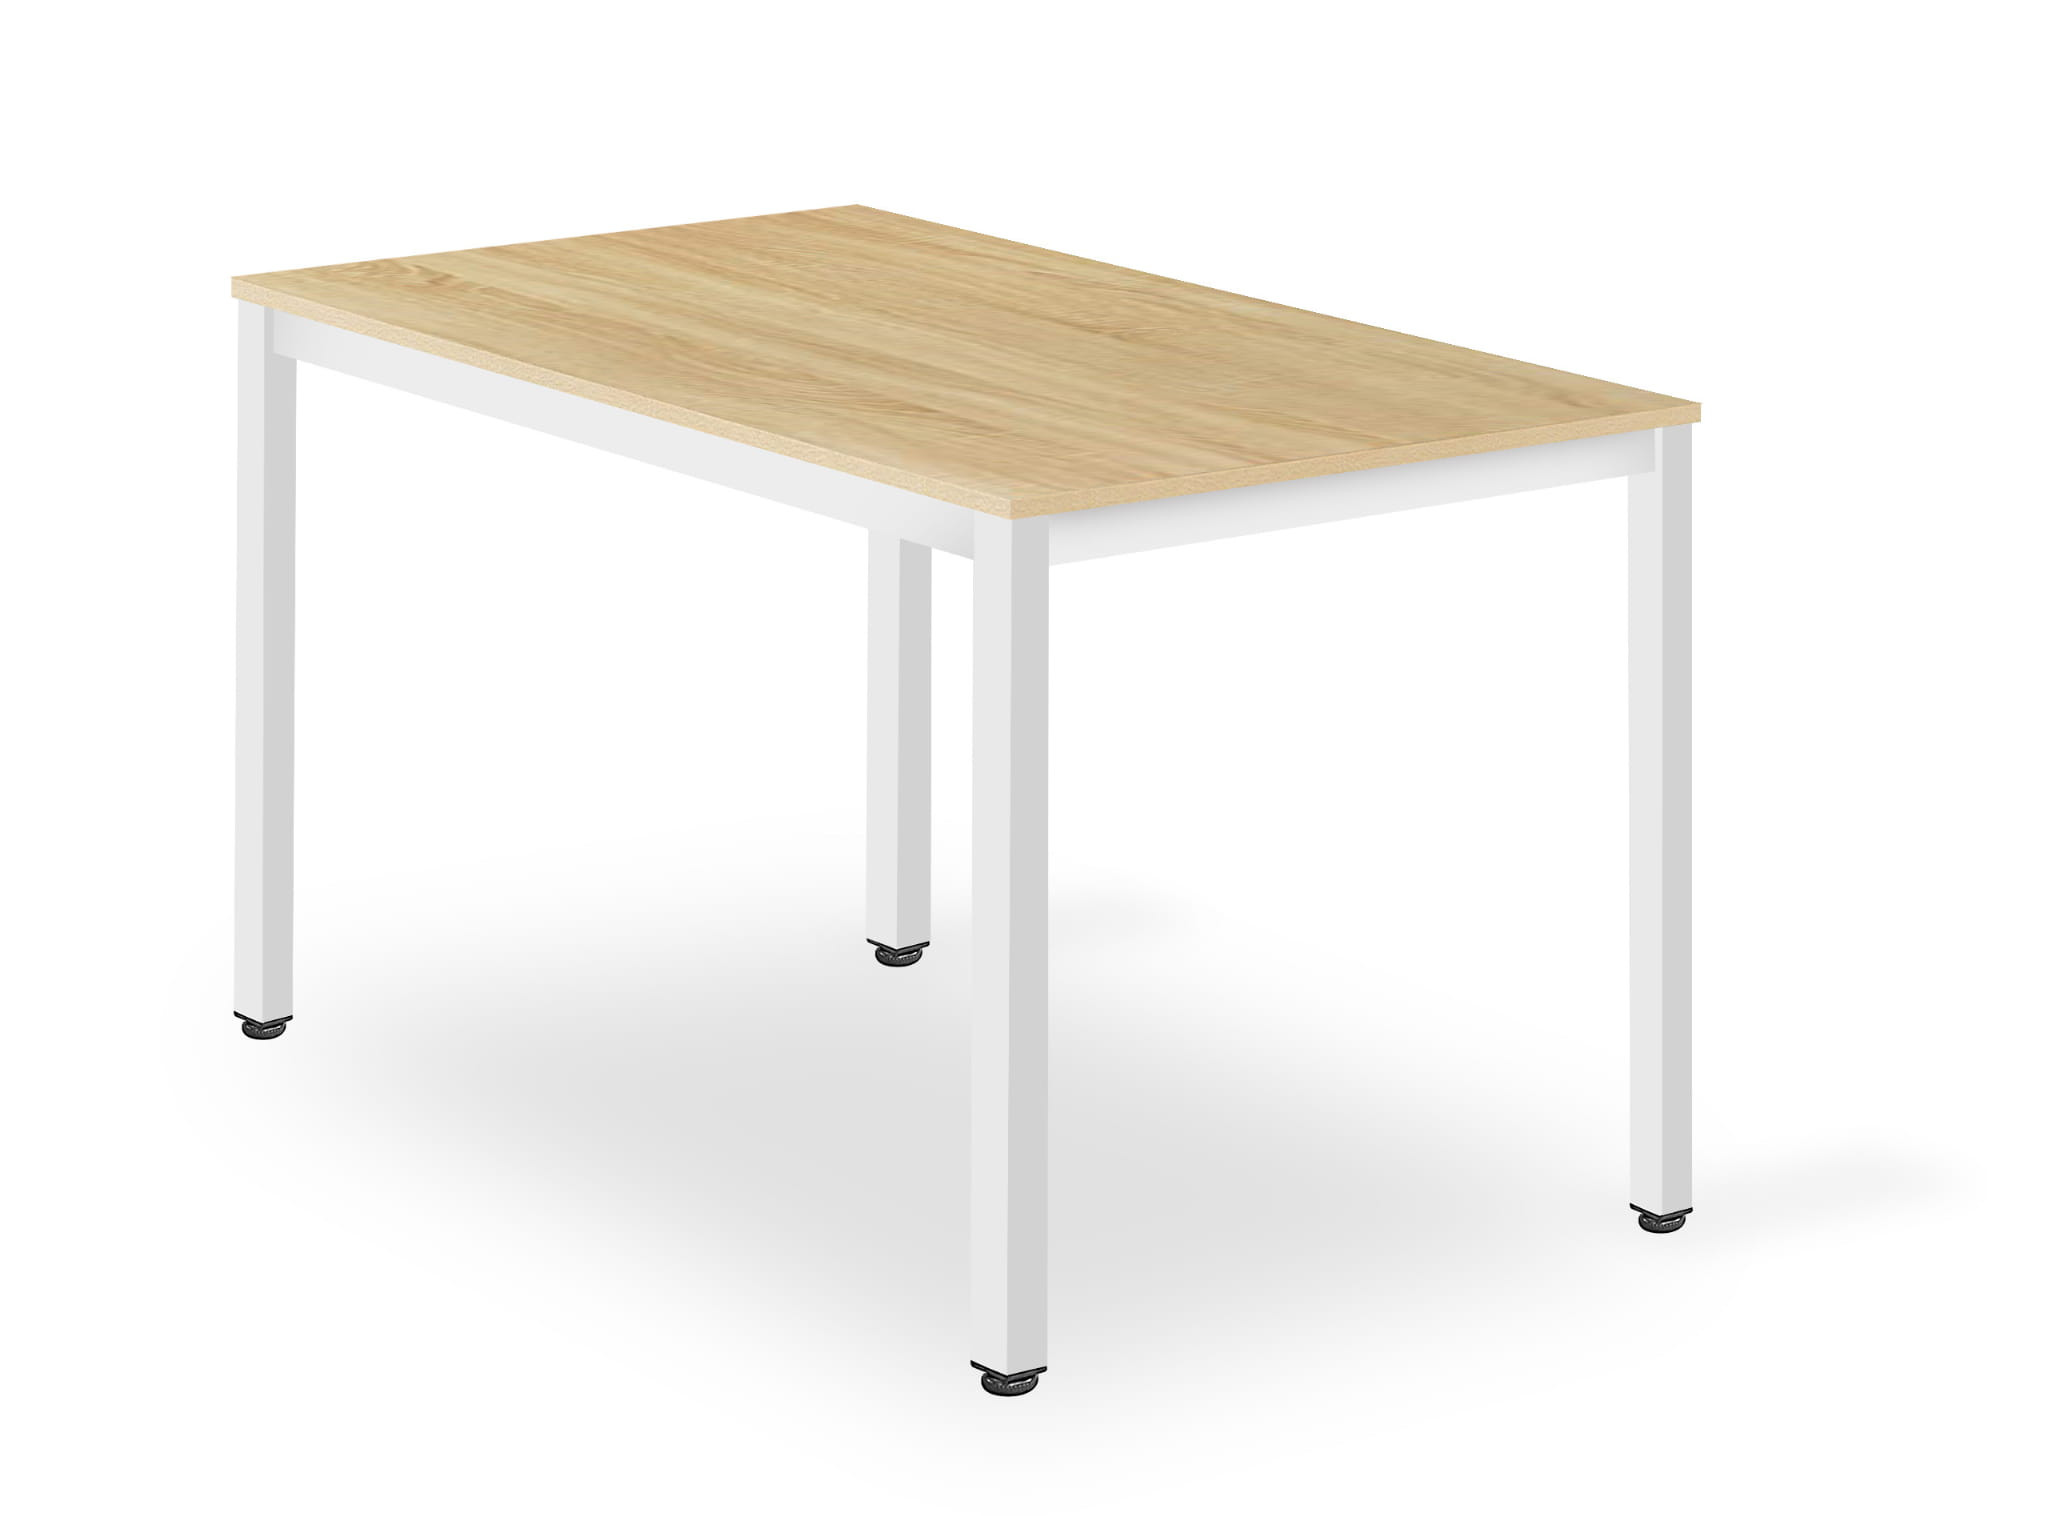 Jedálenský stôl TESSA dubový s bielymi nohami